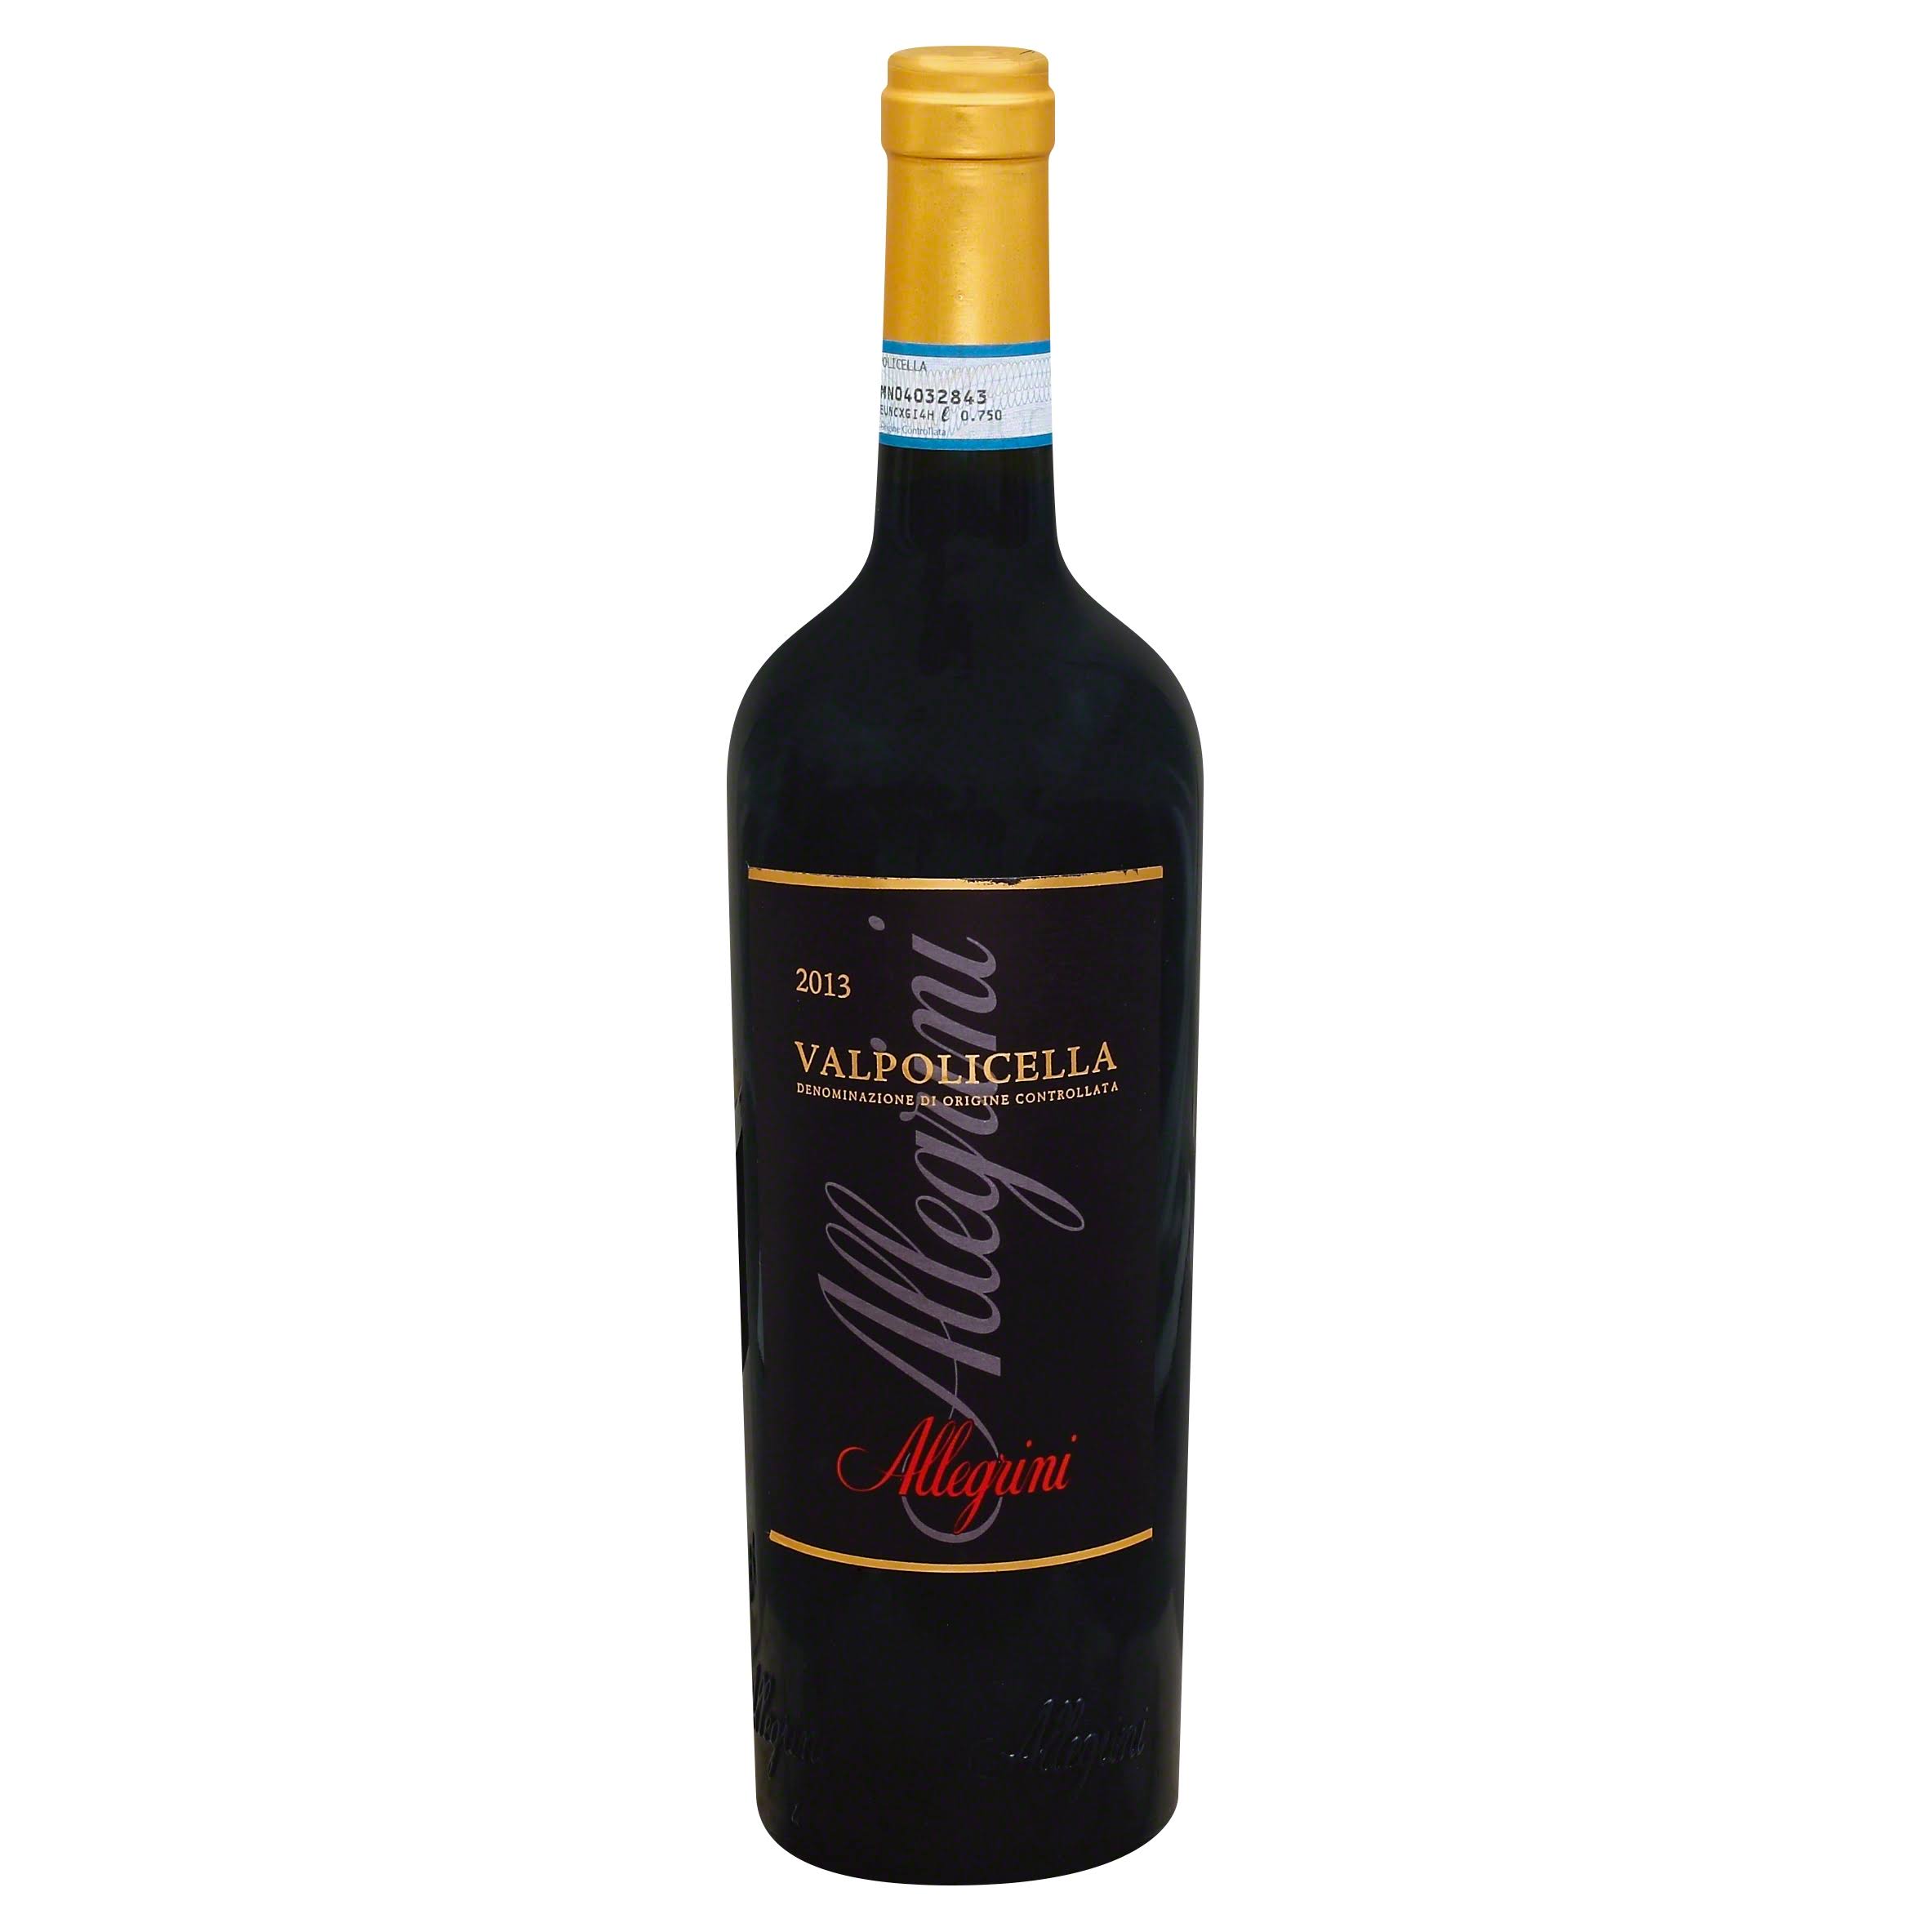 Allegrini Valpolicella Classic Wine - 750ml